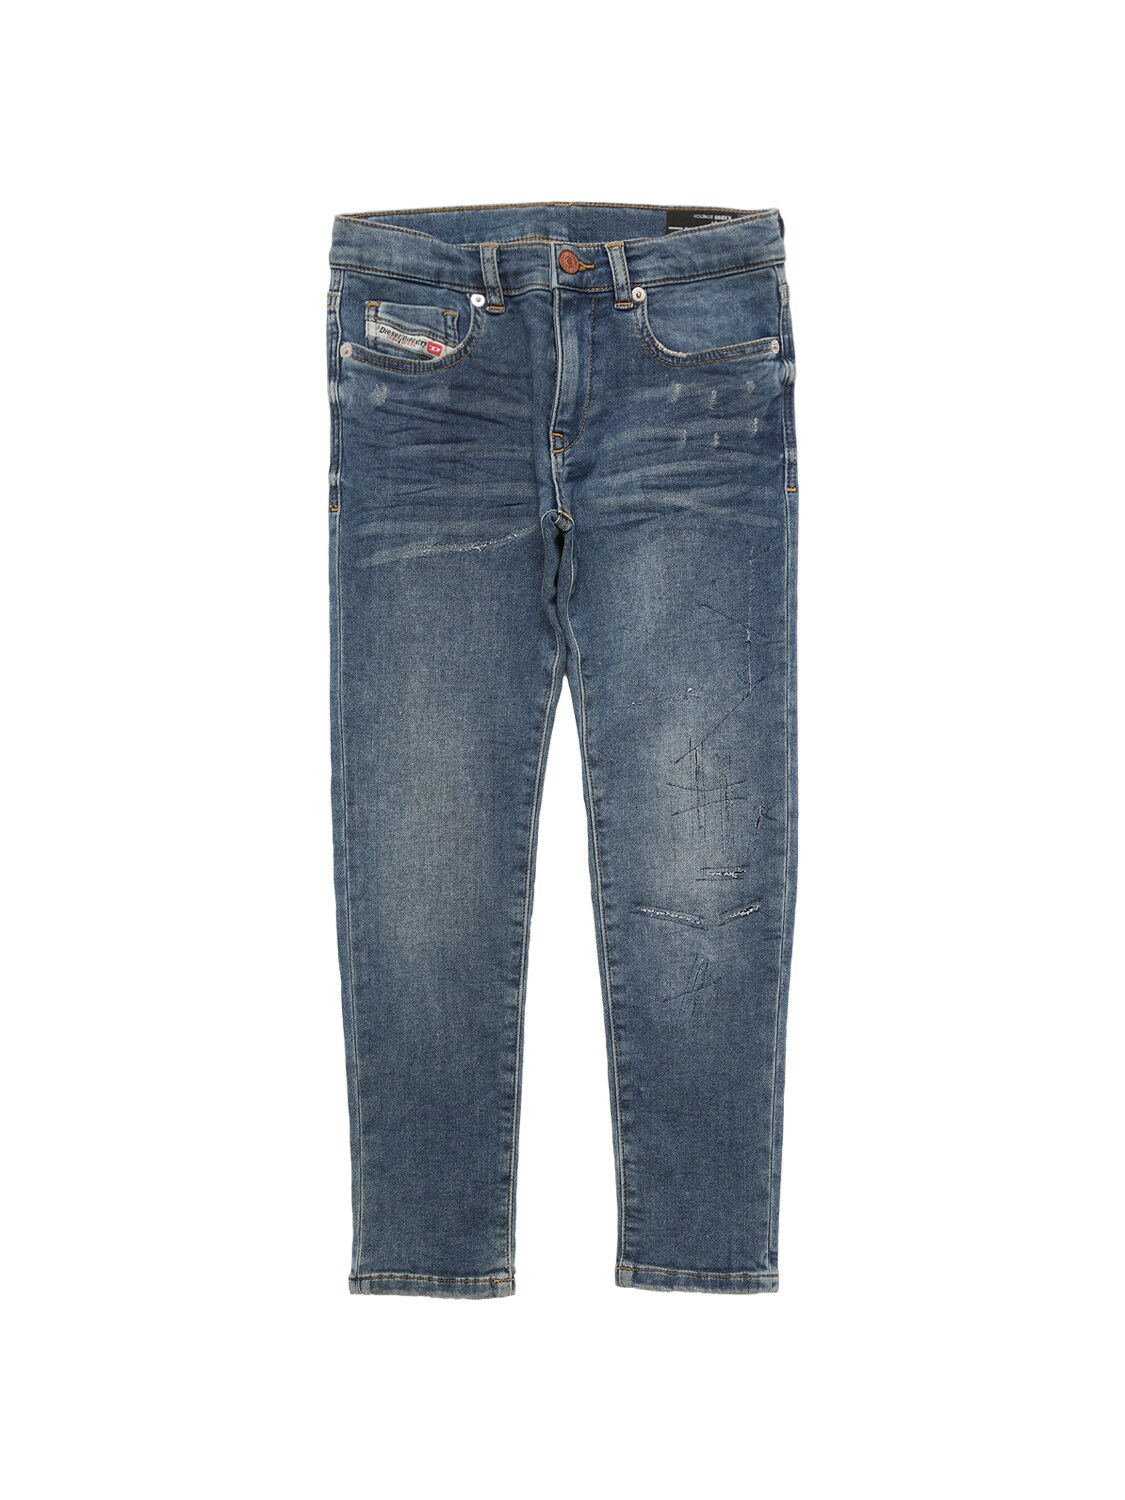 Diesel Kids - Washed cotton denim jeans - Denim | Luisaviaroma